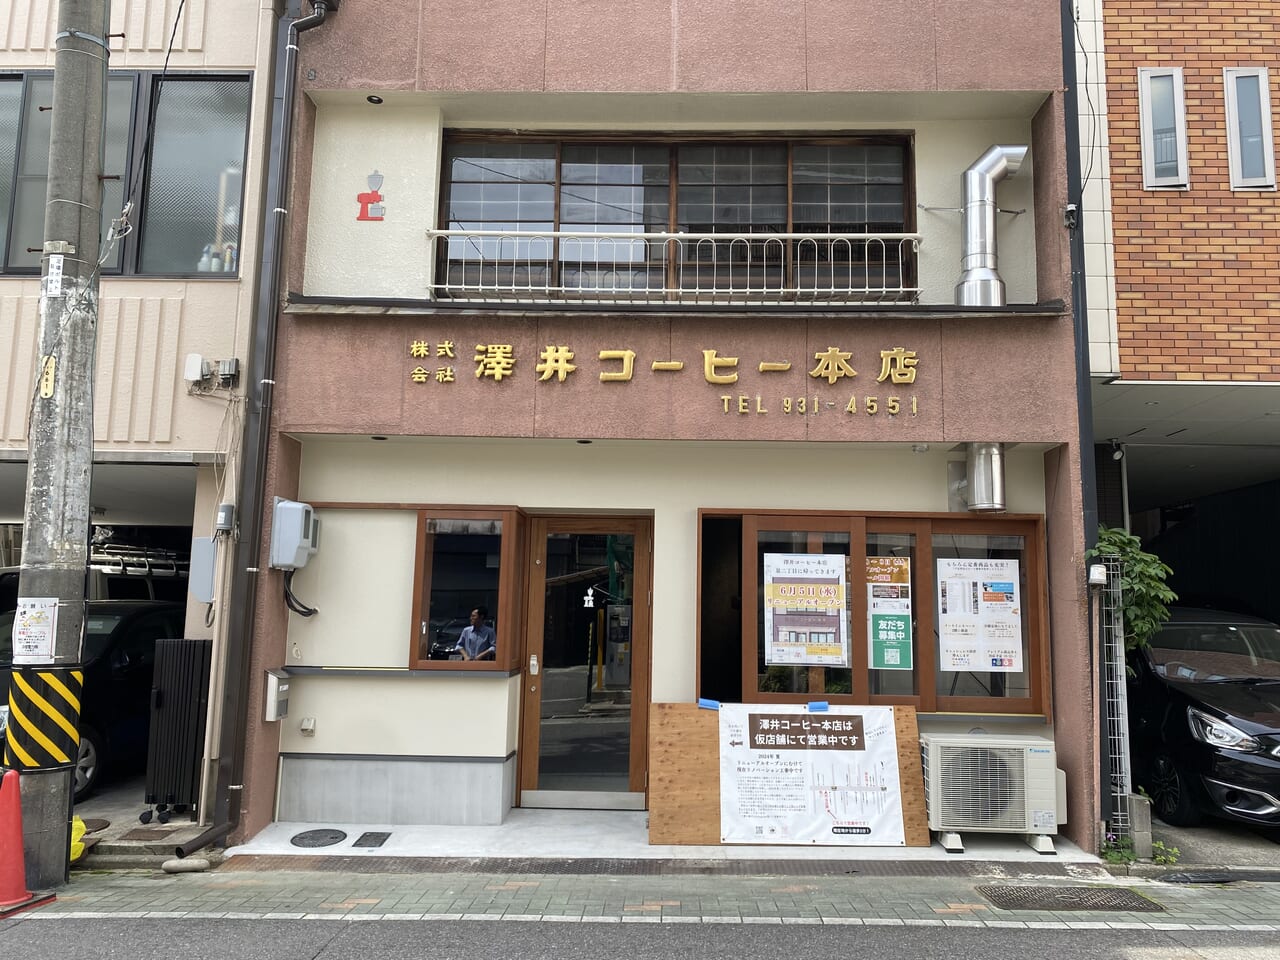 澤井コーヒー本店